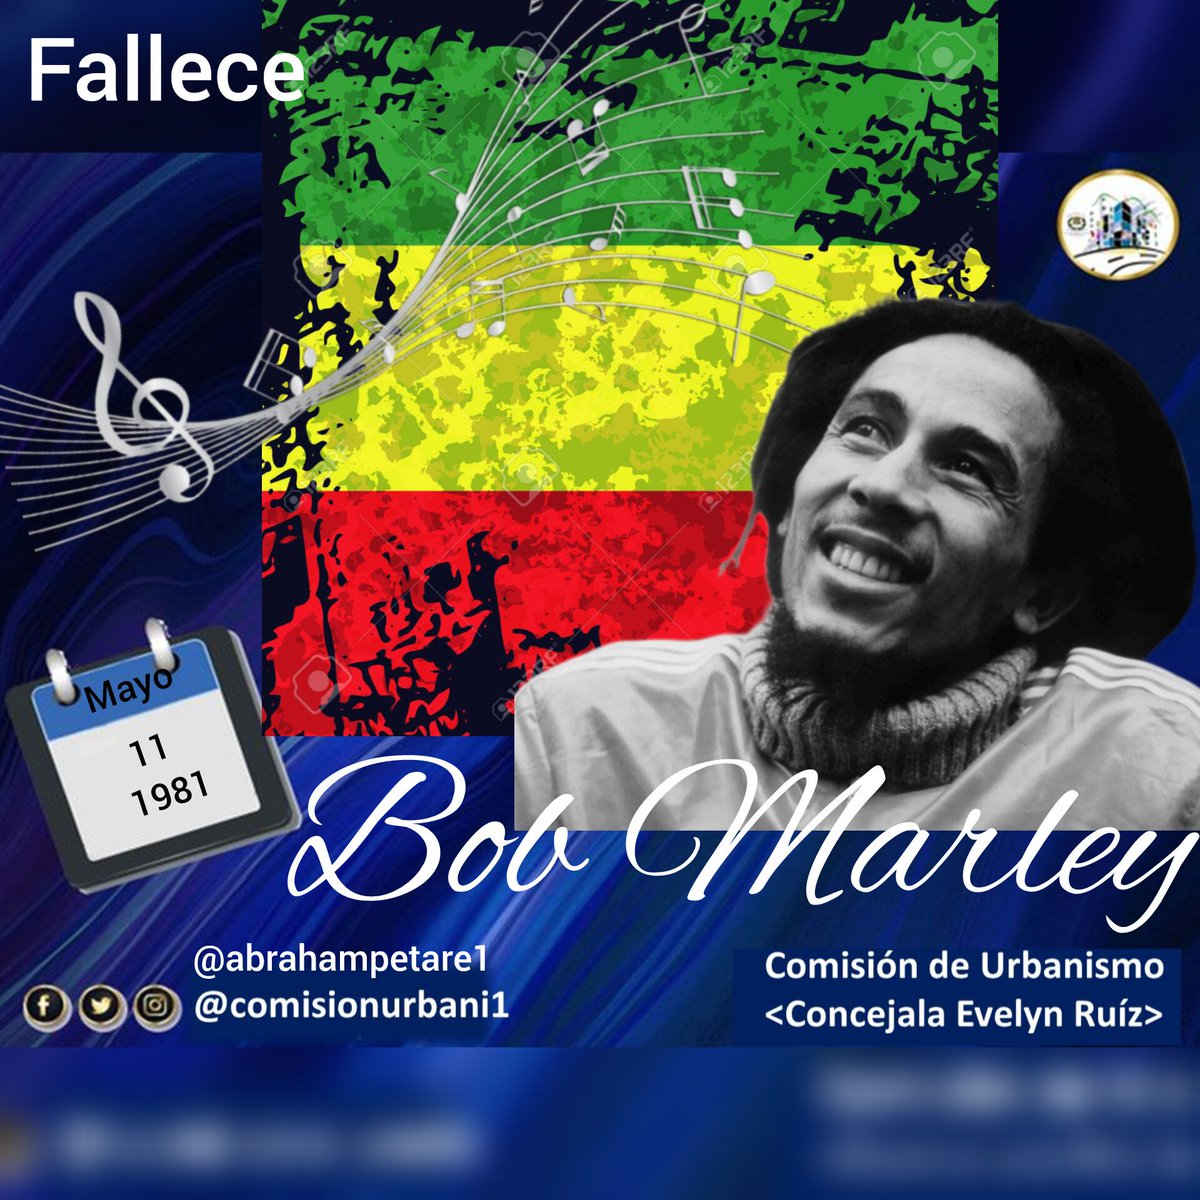 #11May 1981, Fallece en Nine Mile, #Jamaica Bob Marley. Músico, guitarrista y compositor. Defensor de los derechos humanos, las raíces africanas, la igualdad social y de género. #ComisiónDeUrbanismo #UrbanismoSocial #VenezuelaExpresiónCultural